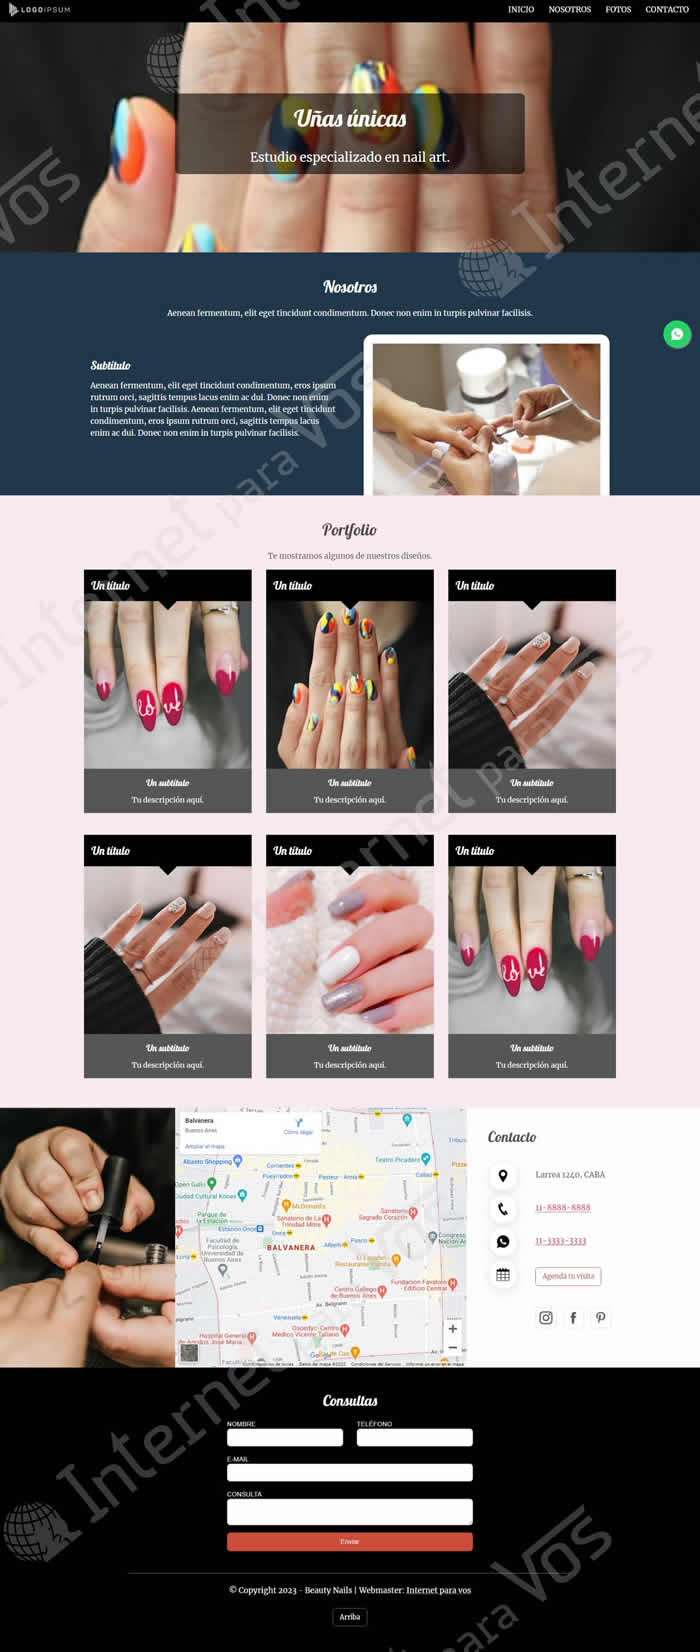 Sitio NAILS servicios de manicuría, belleza de uñas, nail art. 4 secciones, responsive. Vista completa